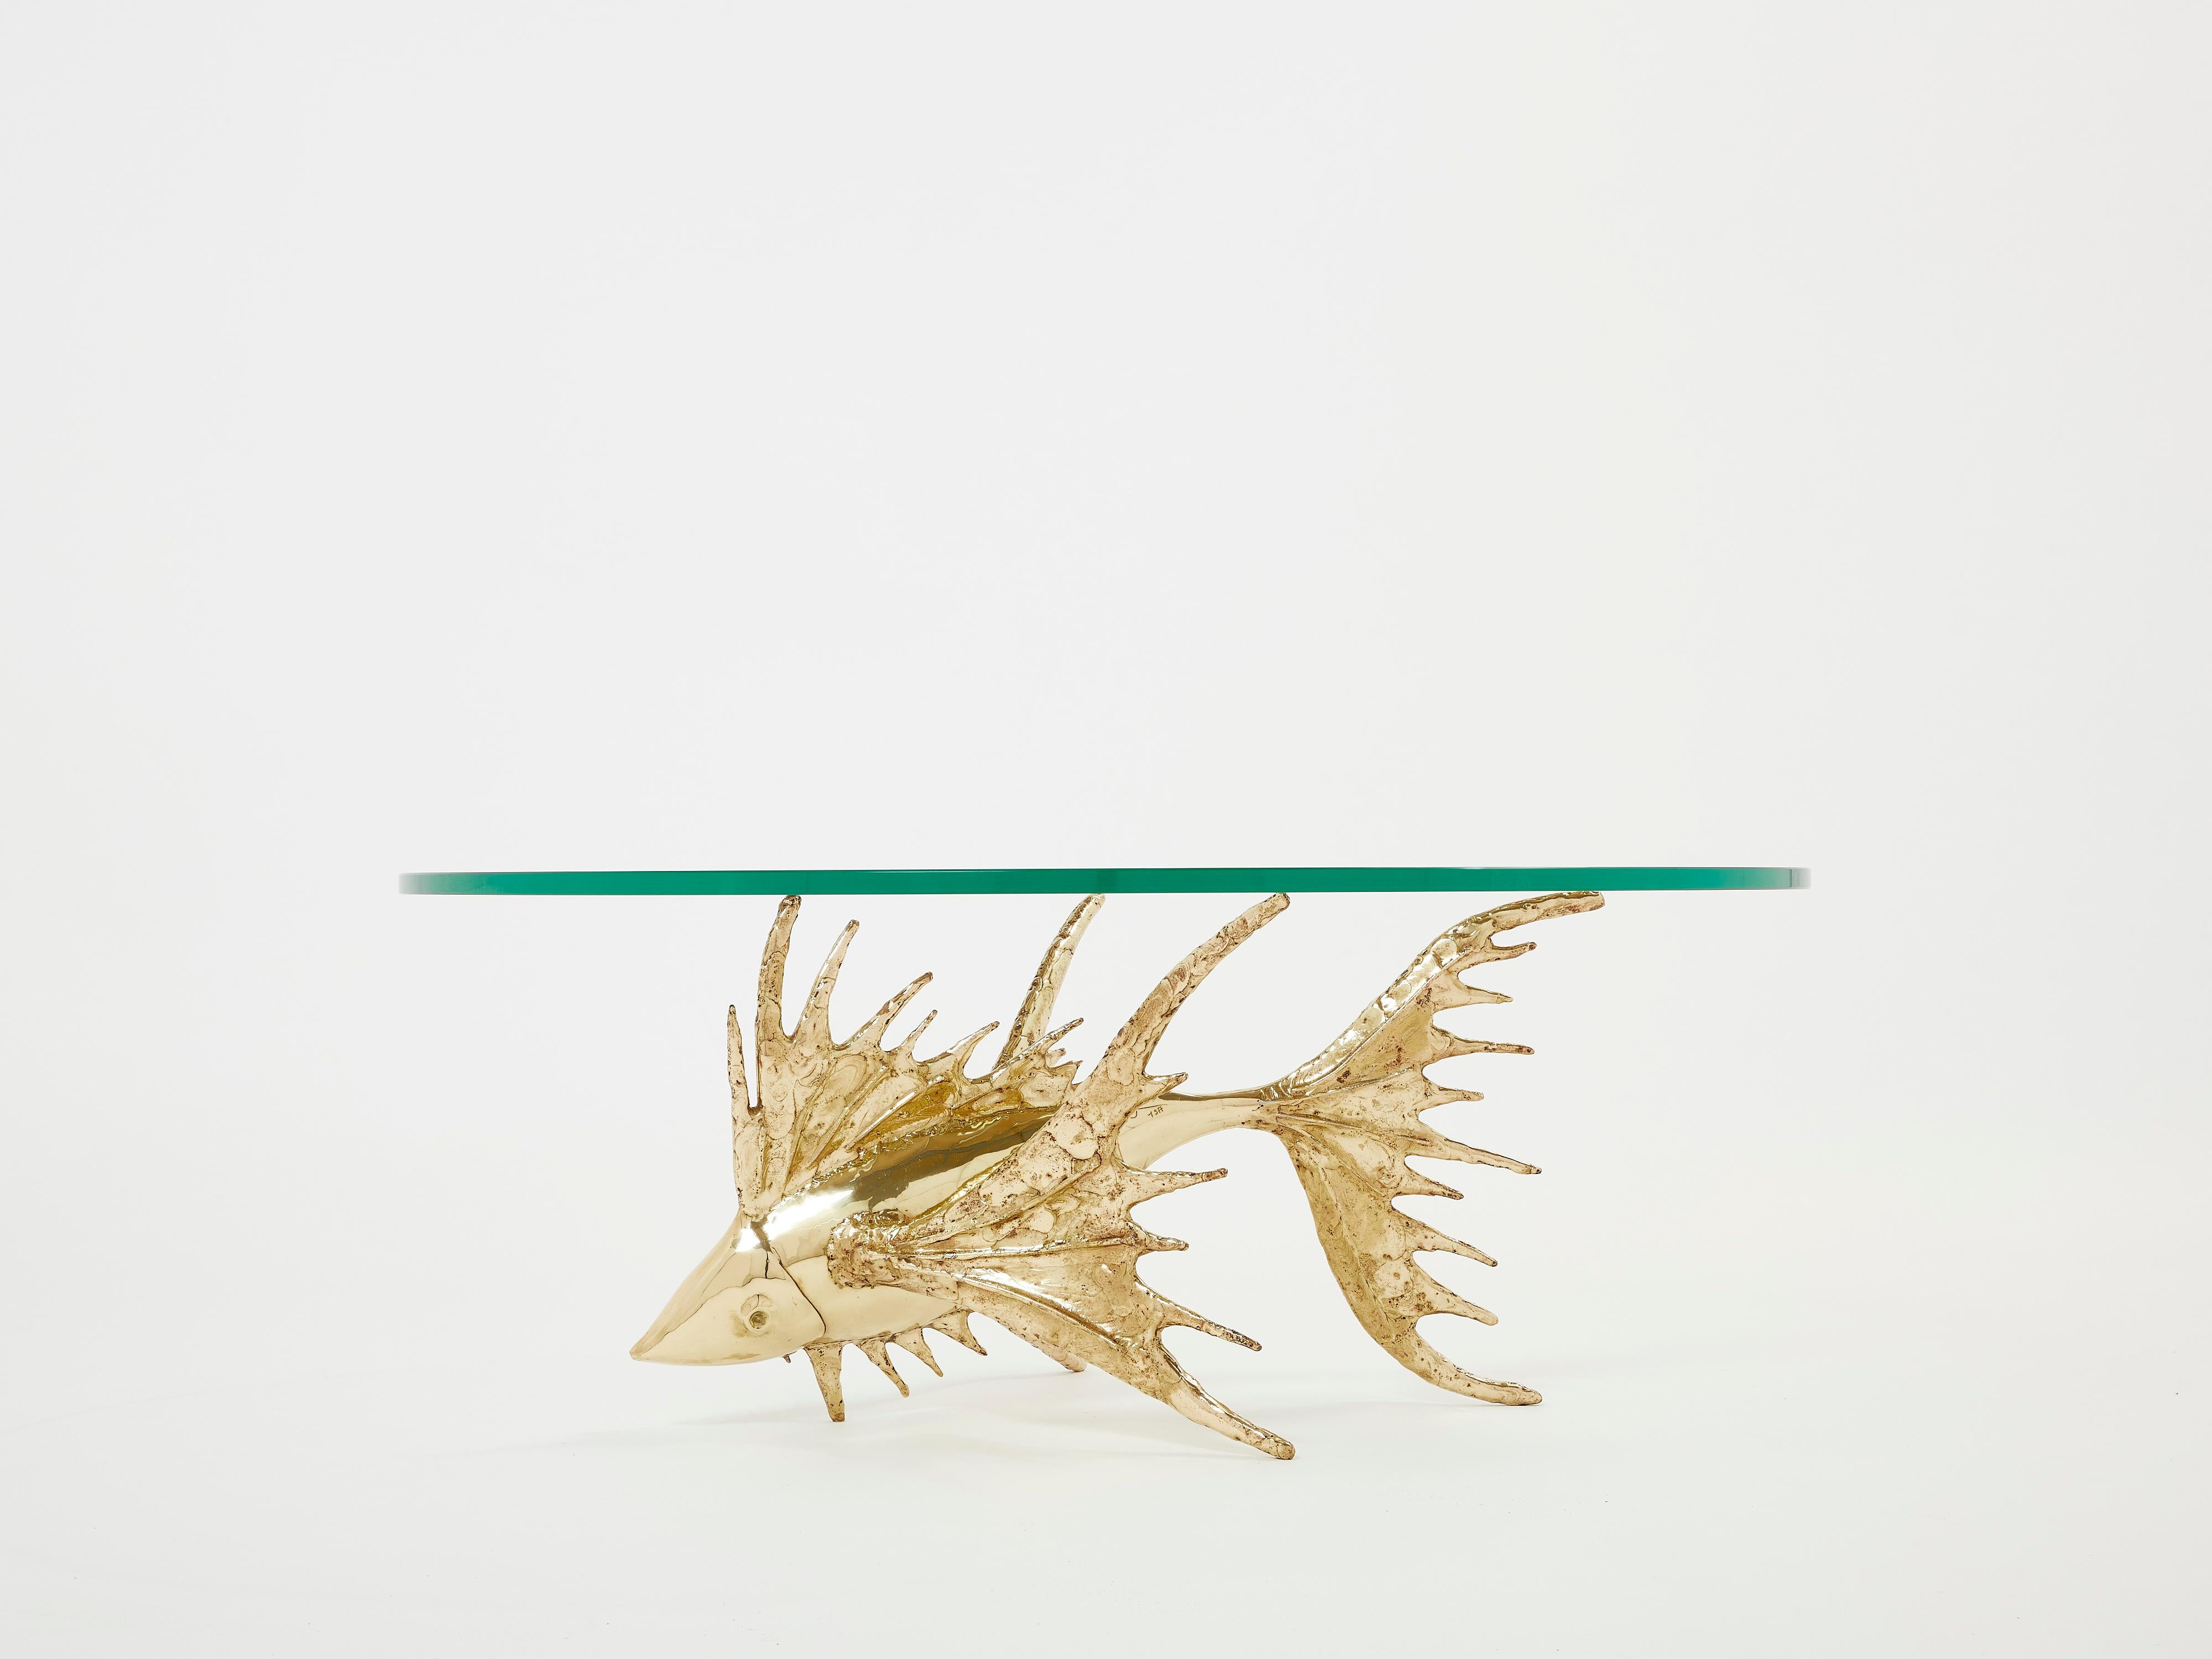 Unique Signed Alain Chervet Brass Fish Sculpture Coffee Table 1977 For Sale 5